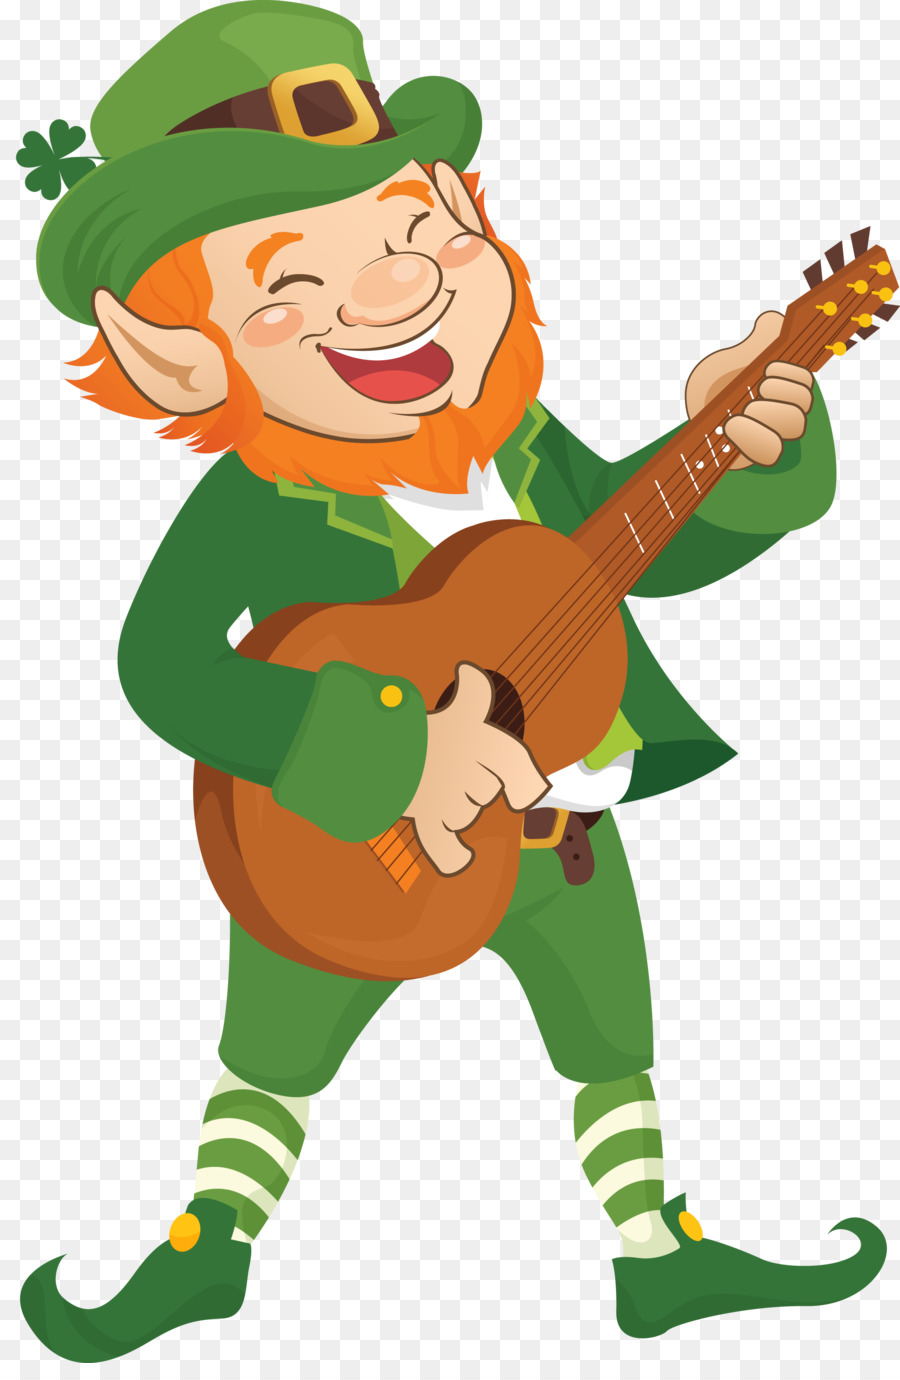 The Leprechaun Song Elf - leprechaun png download - 2111*3197 - Free Transparent Leprechaun png Download.